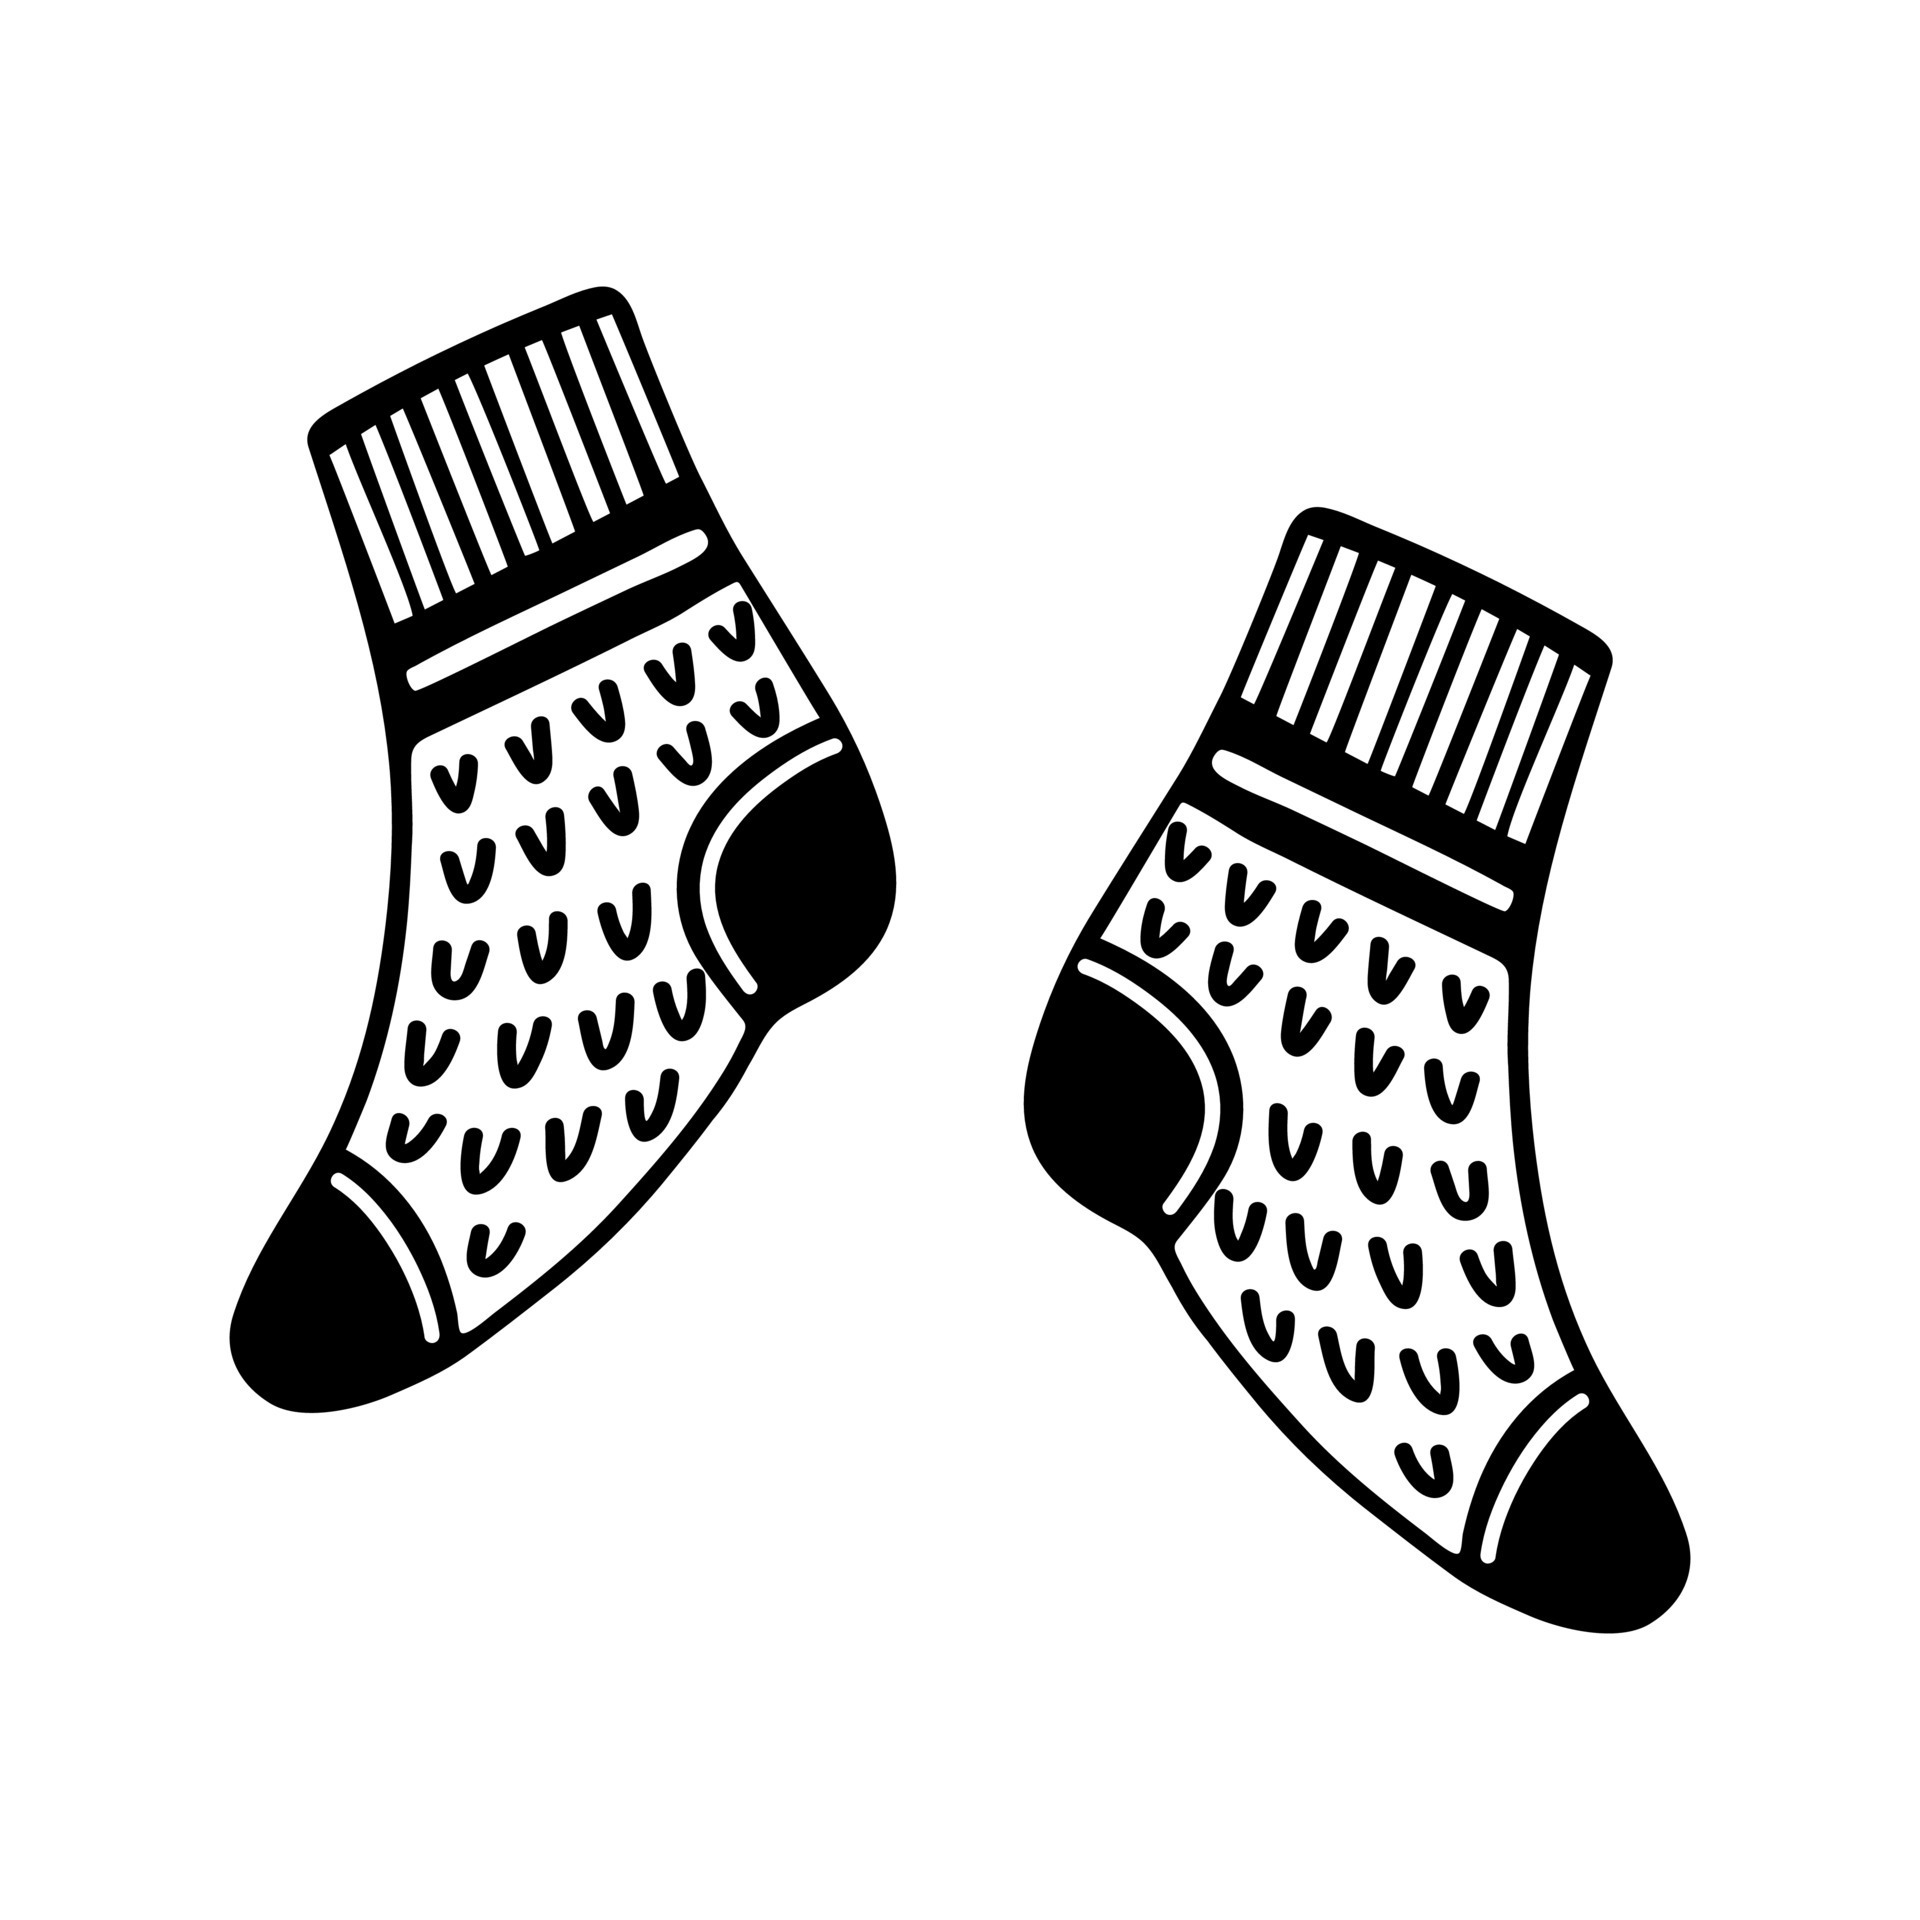 Calcetines de invierno, el icono de estilo de dibujos animados Imagen  Vector de stock - Alamy